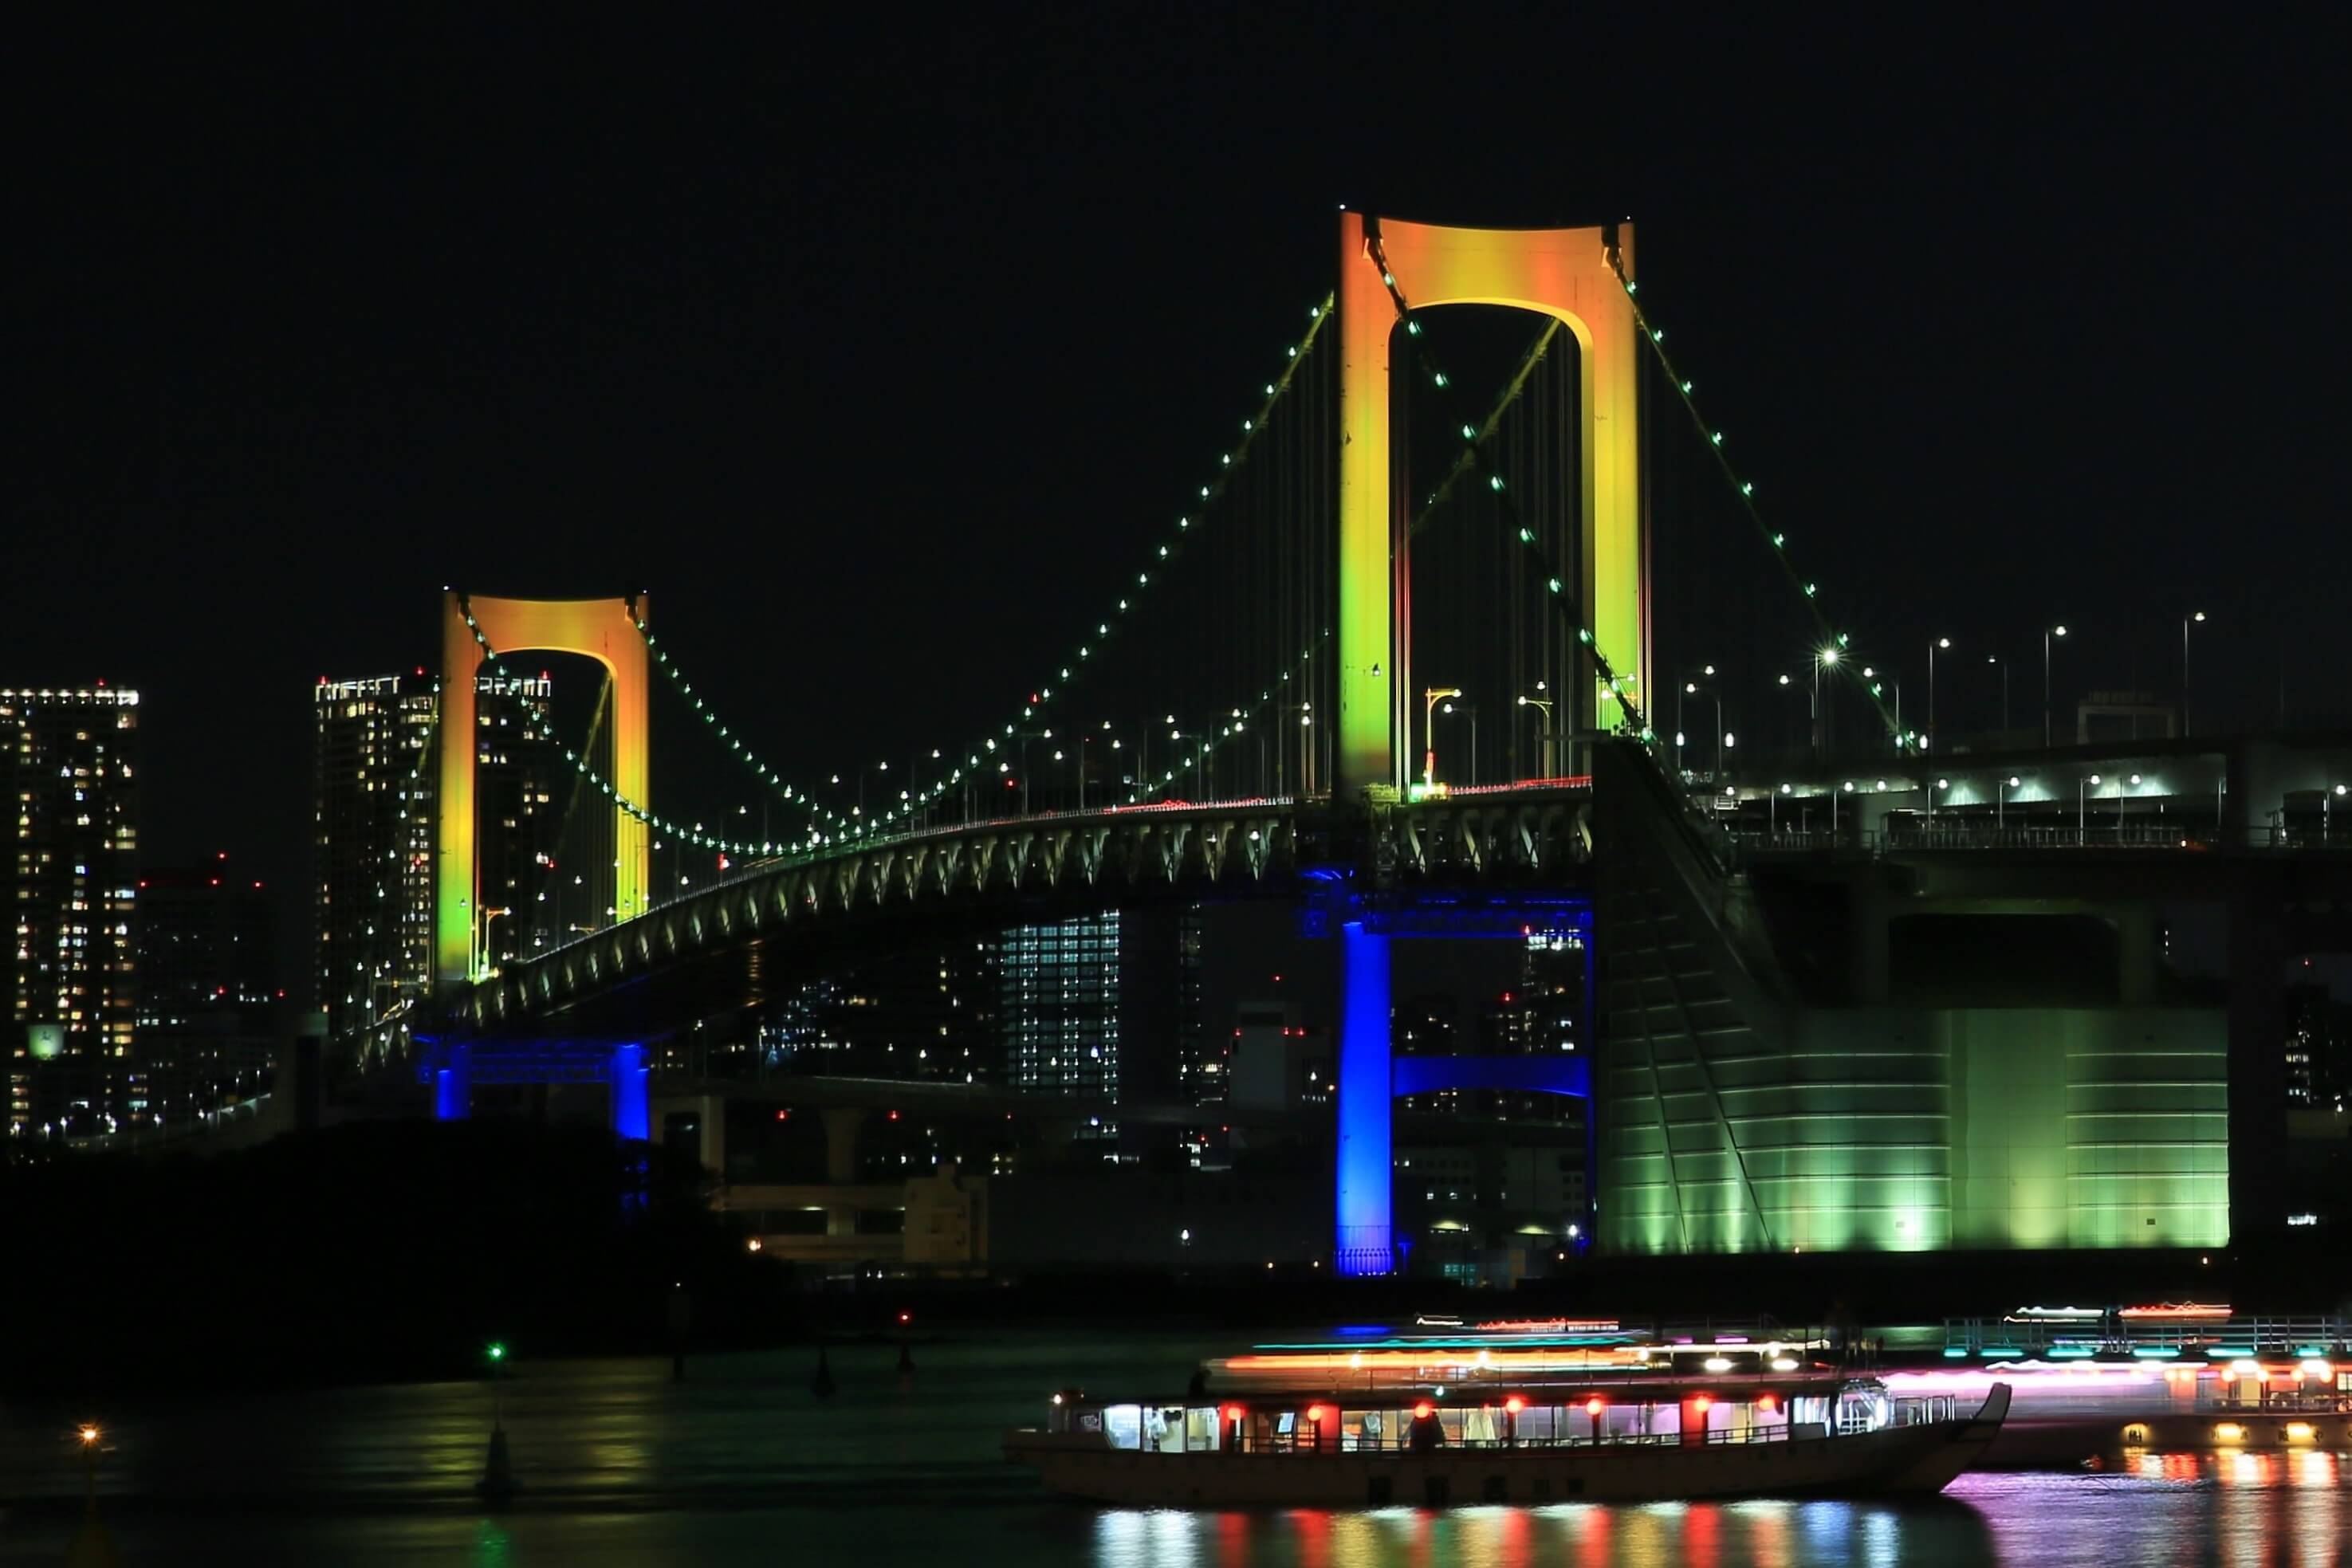 イルミネーションアイランドお台場2018 Illumination Island Odaiba 燈飾 首都高レインボーブリッジライトアップ2018